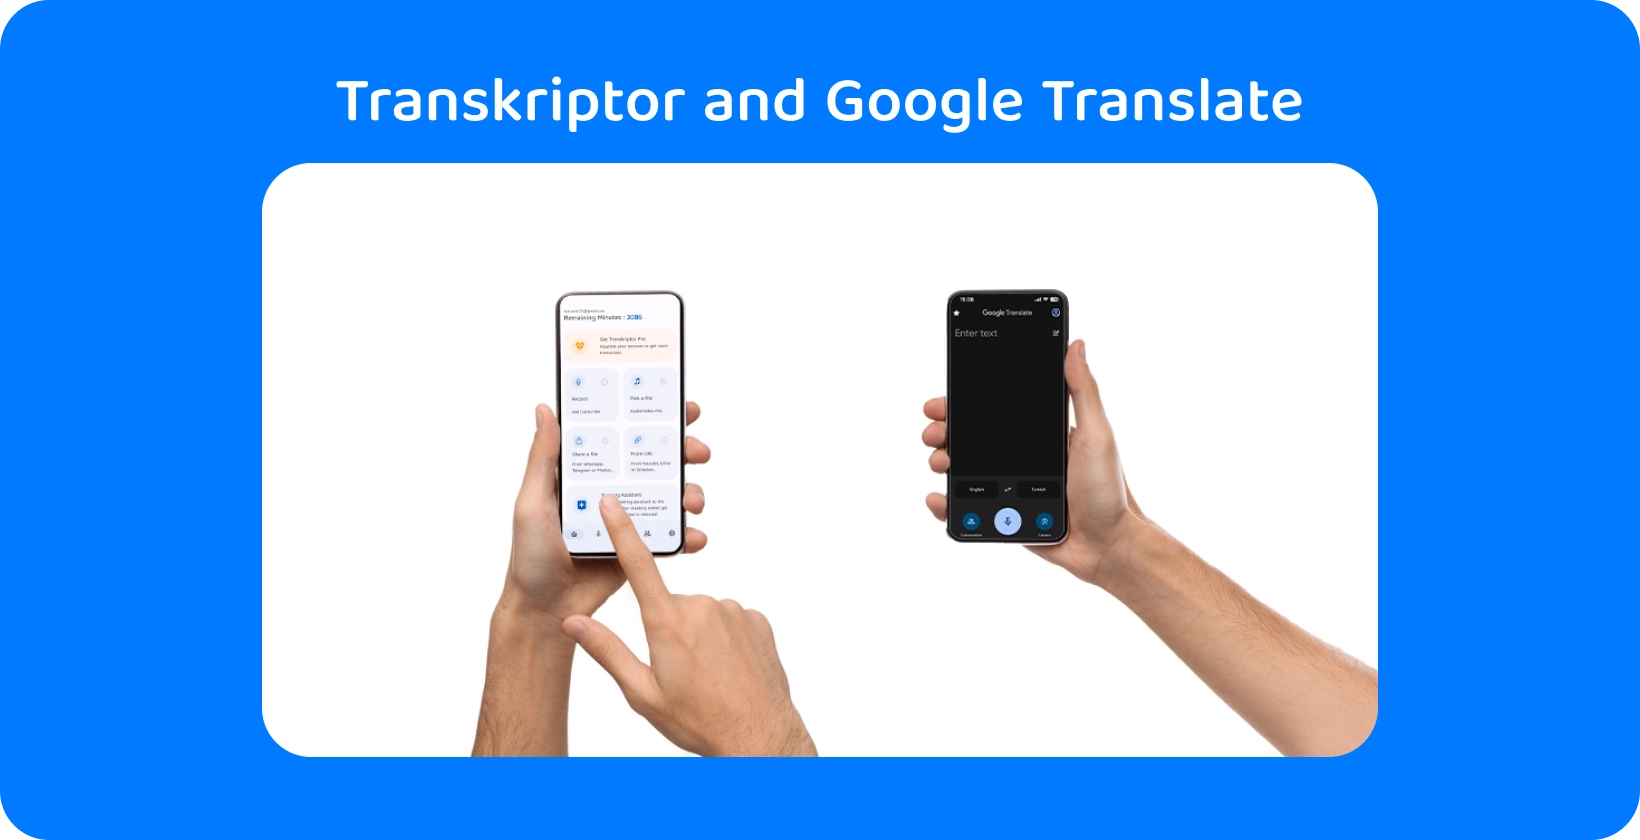 Kaksi kättä, jotka pitävät älypuhelimia, joissa on Transkriptor ja Google Translate, joka osoittaa äänen transkription ja käännöksen.